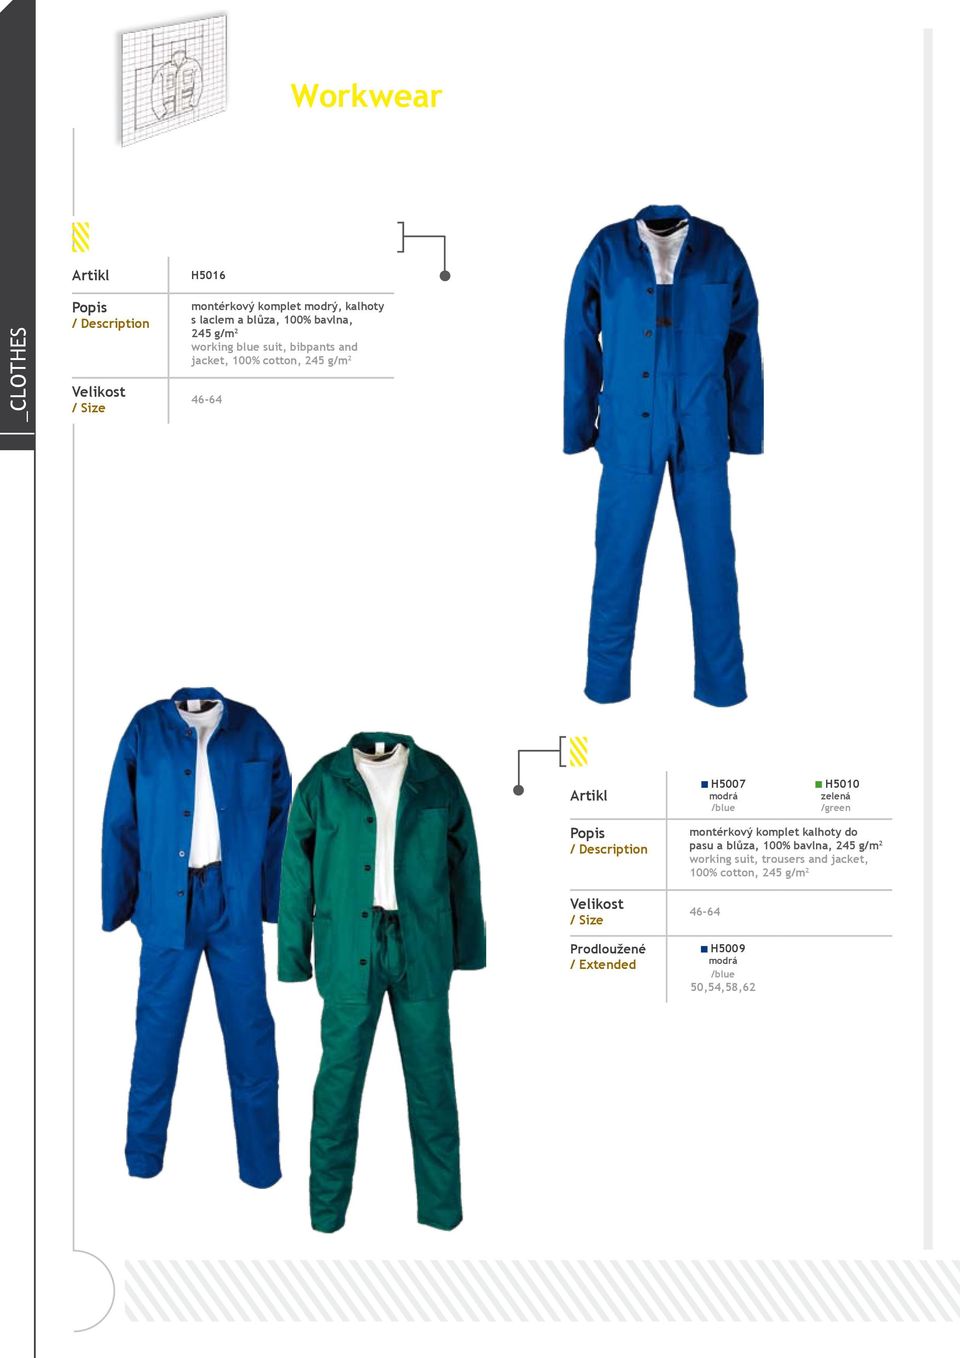 /blue H5010 zelená /green Prodloužené / Extended montérkový komplet kalhoty do pasu a blůza, 100% bavlna,